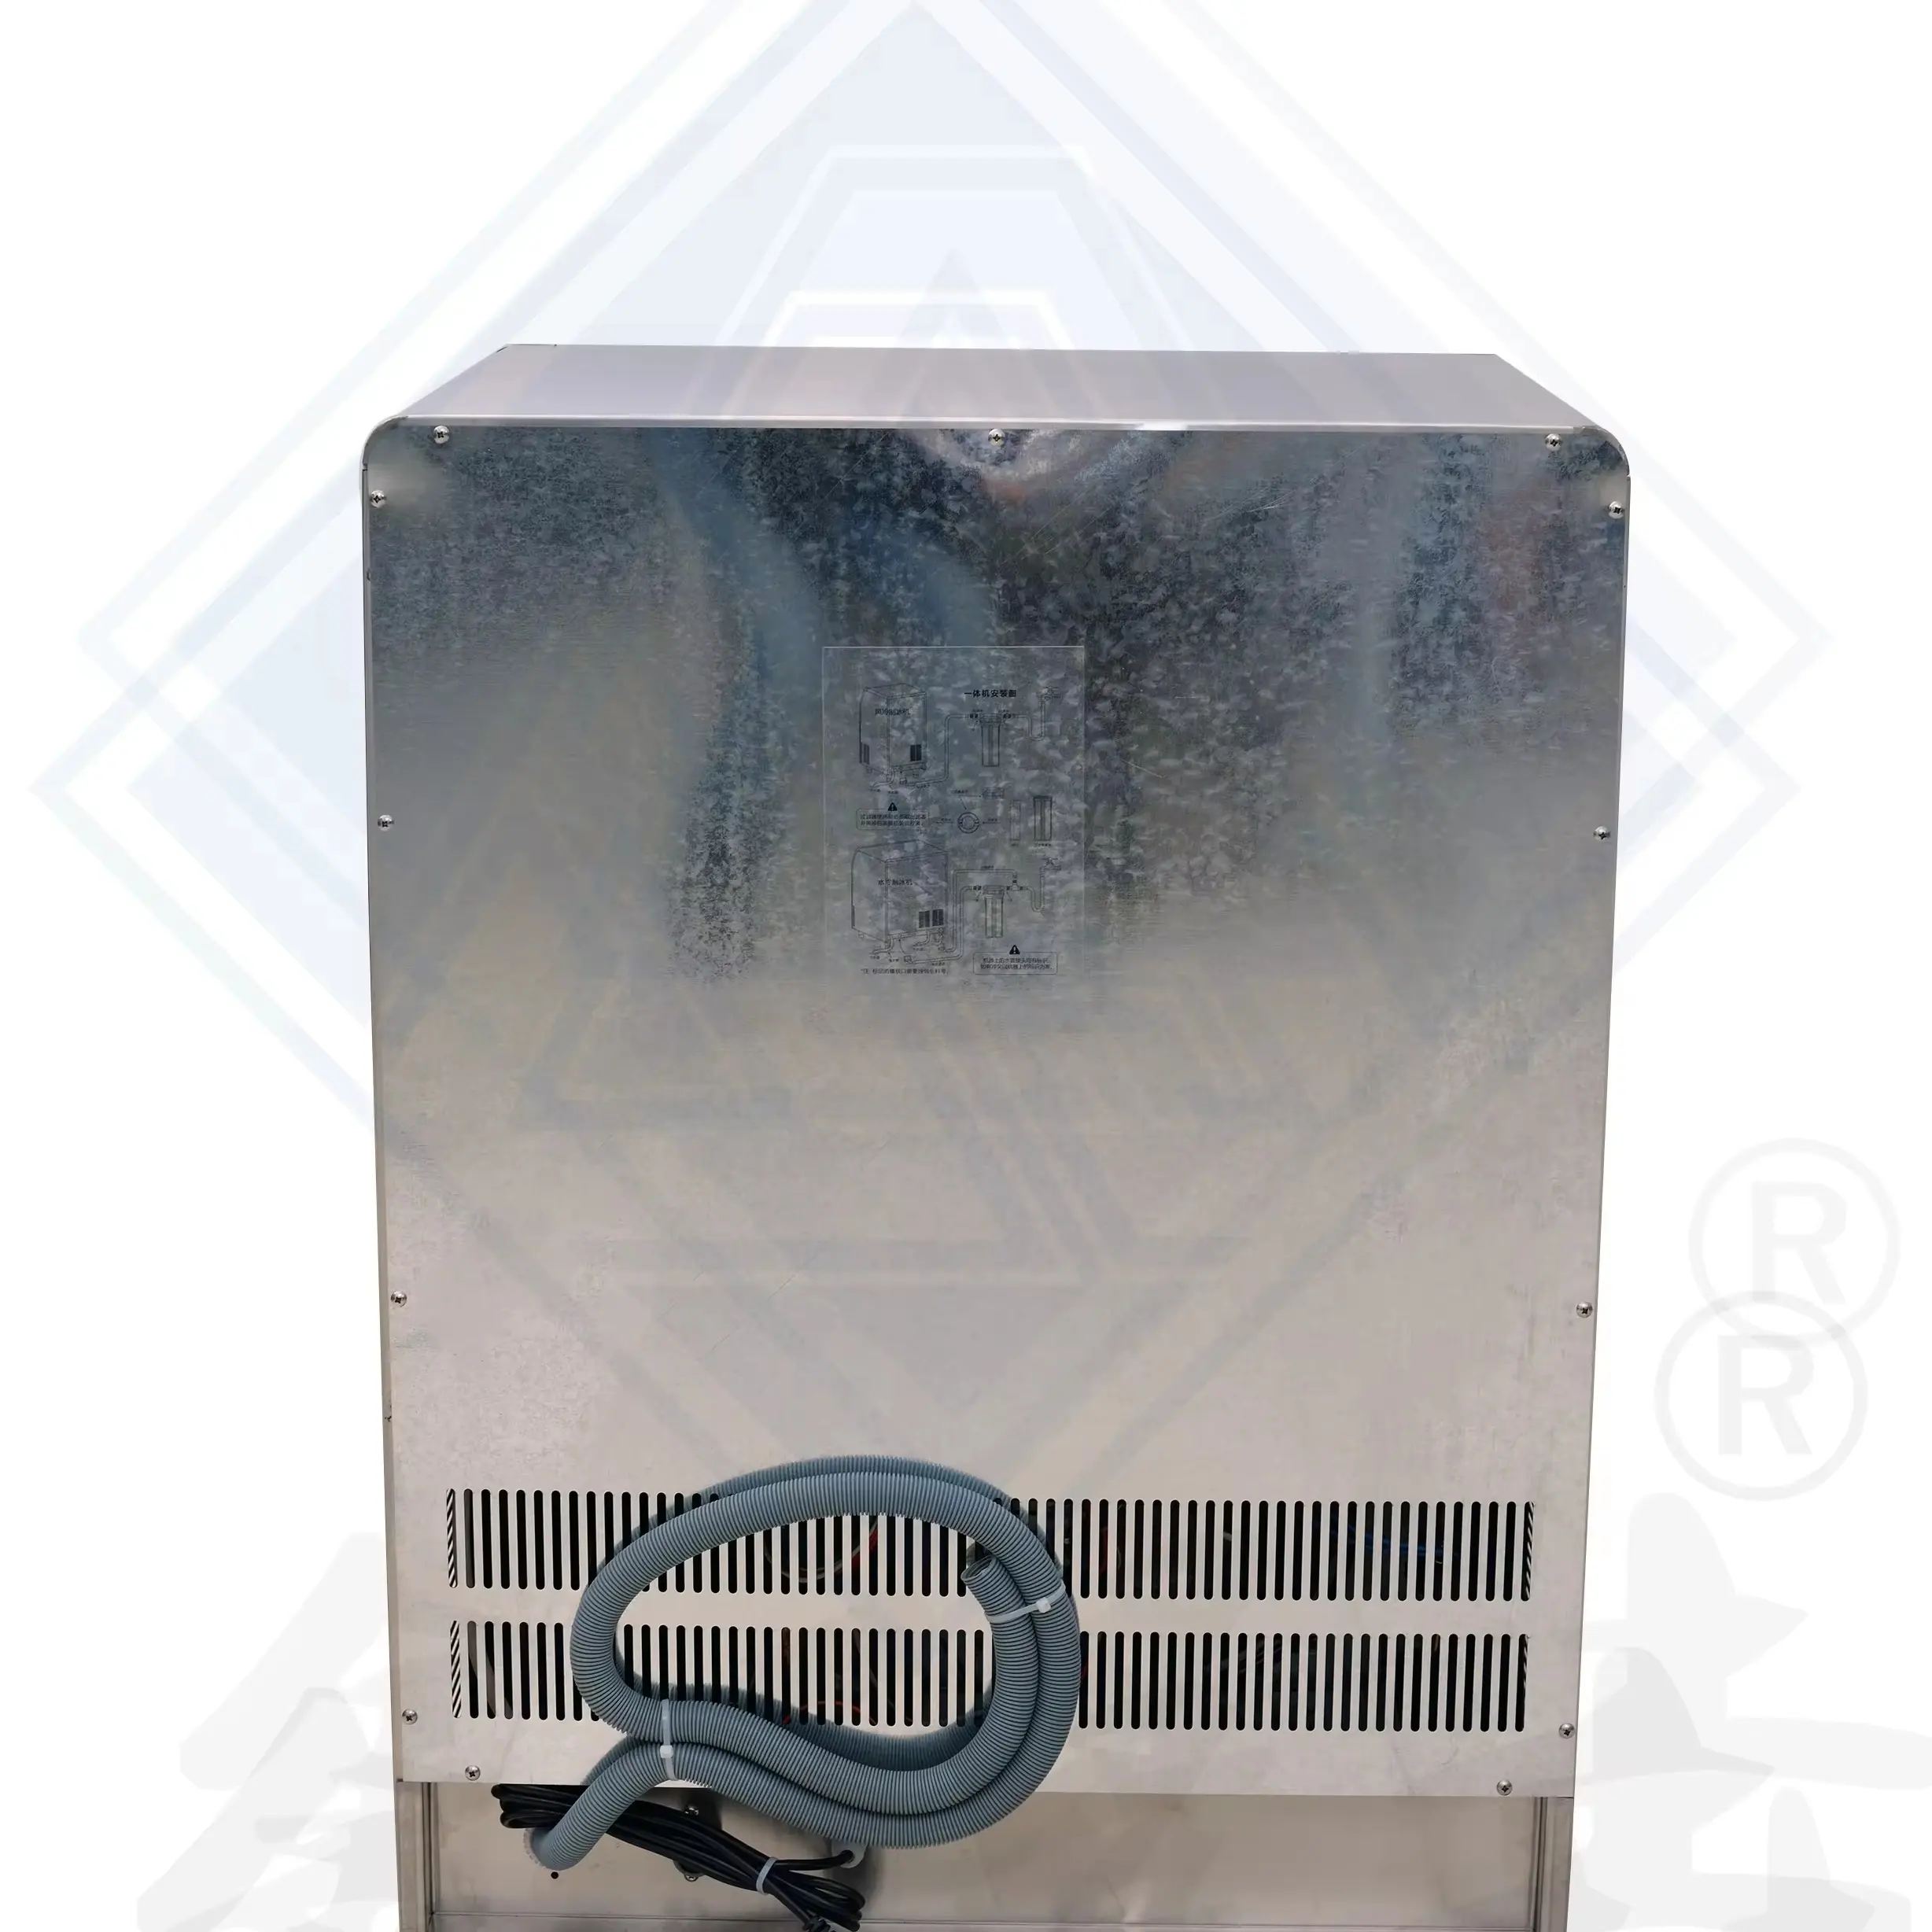 Otomatik buz küpü makinesi buz küpü yapma makinesi nakliye included5 ton küp buz makinesi